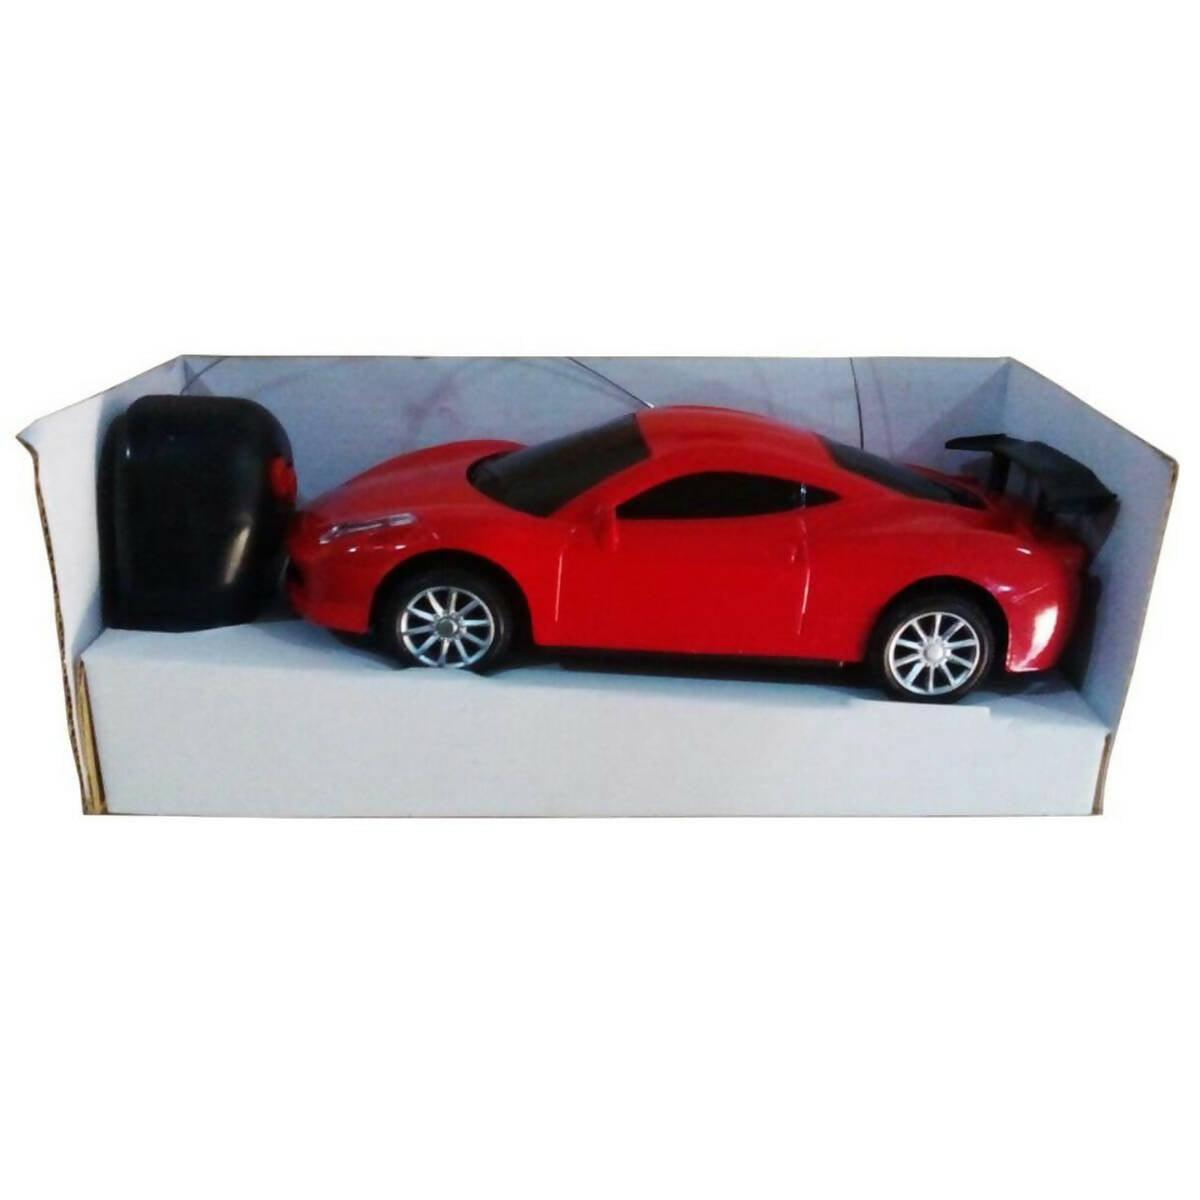 Rc-Ferari Car - Red (Small) - 2 Channel - ValueBox